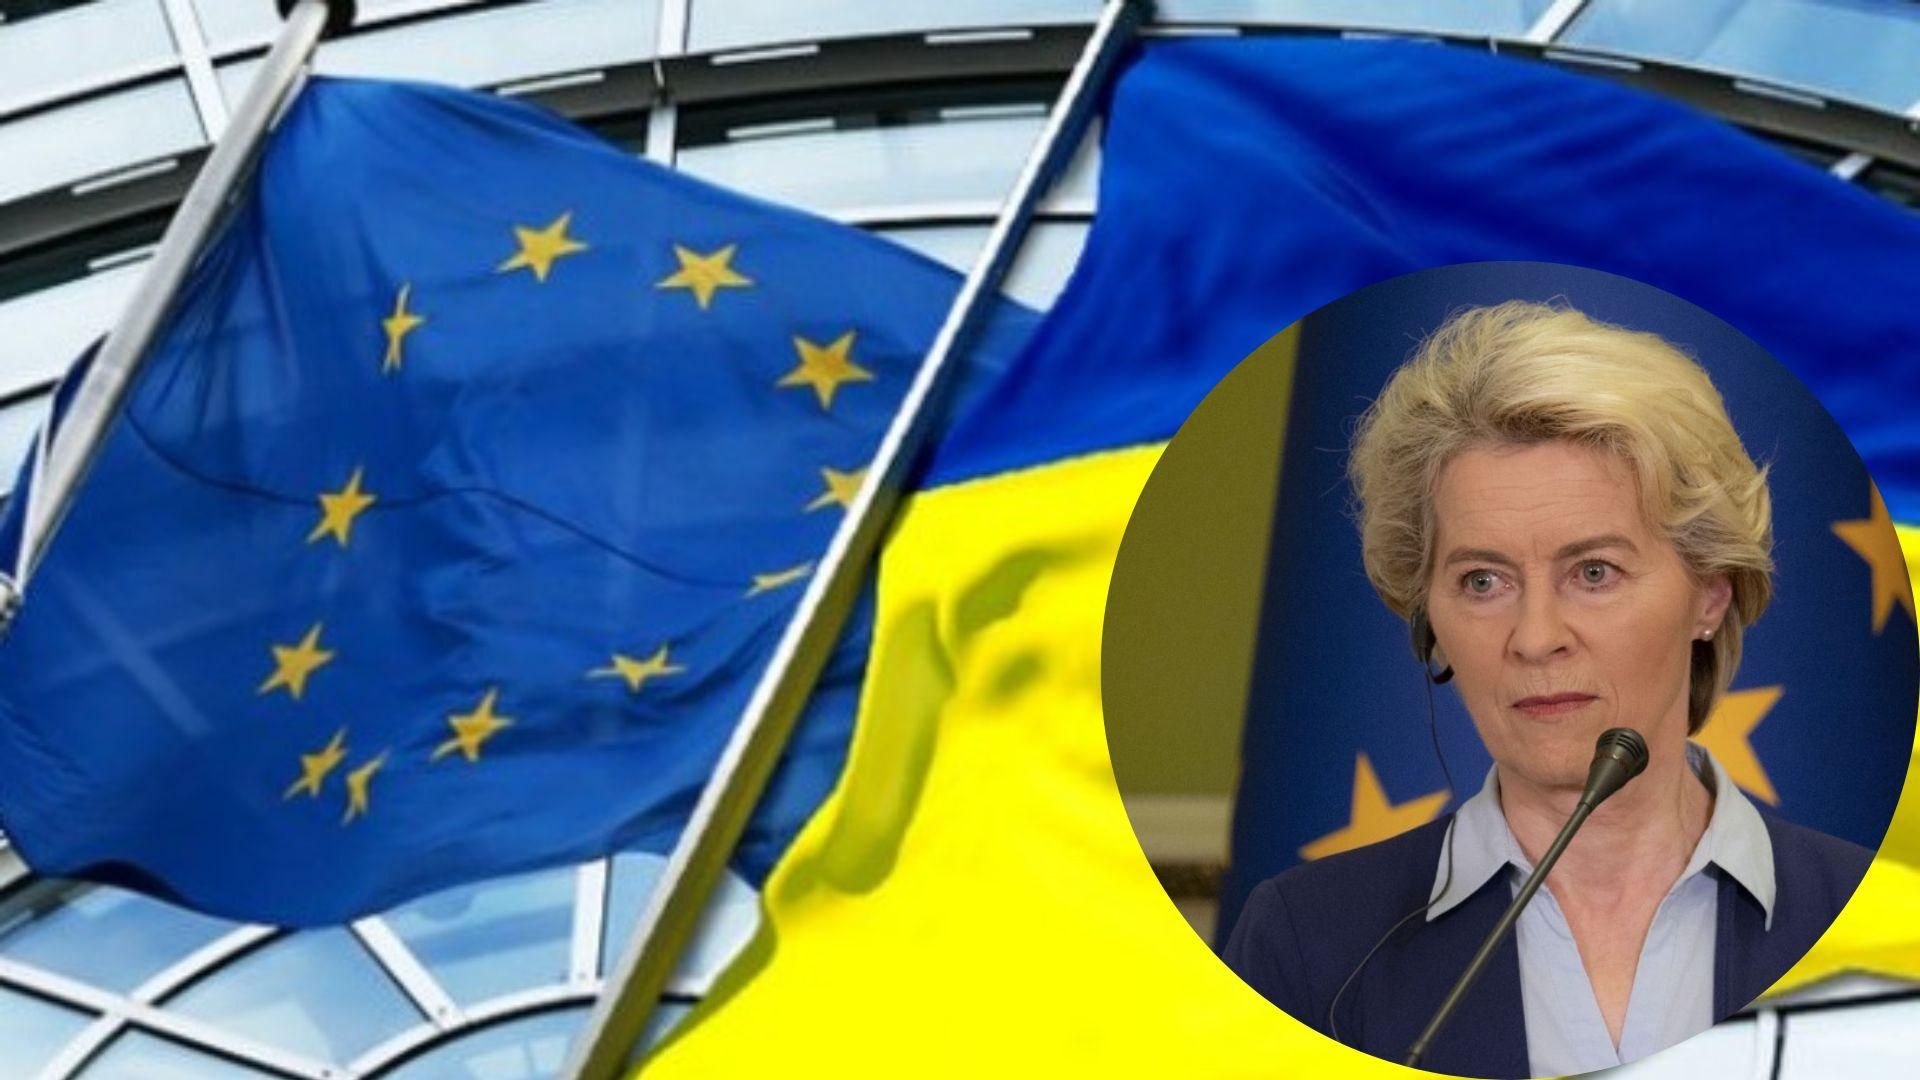 Еврокомиссия определится относительно кандидатства Украины в ЕС 23 – 24 июня, – фон дер Ляйен